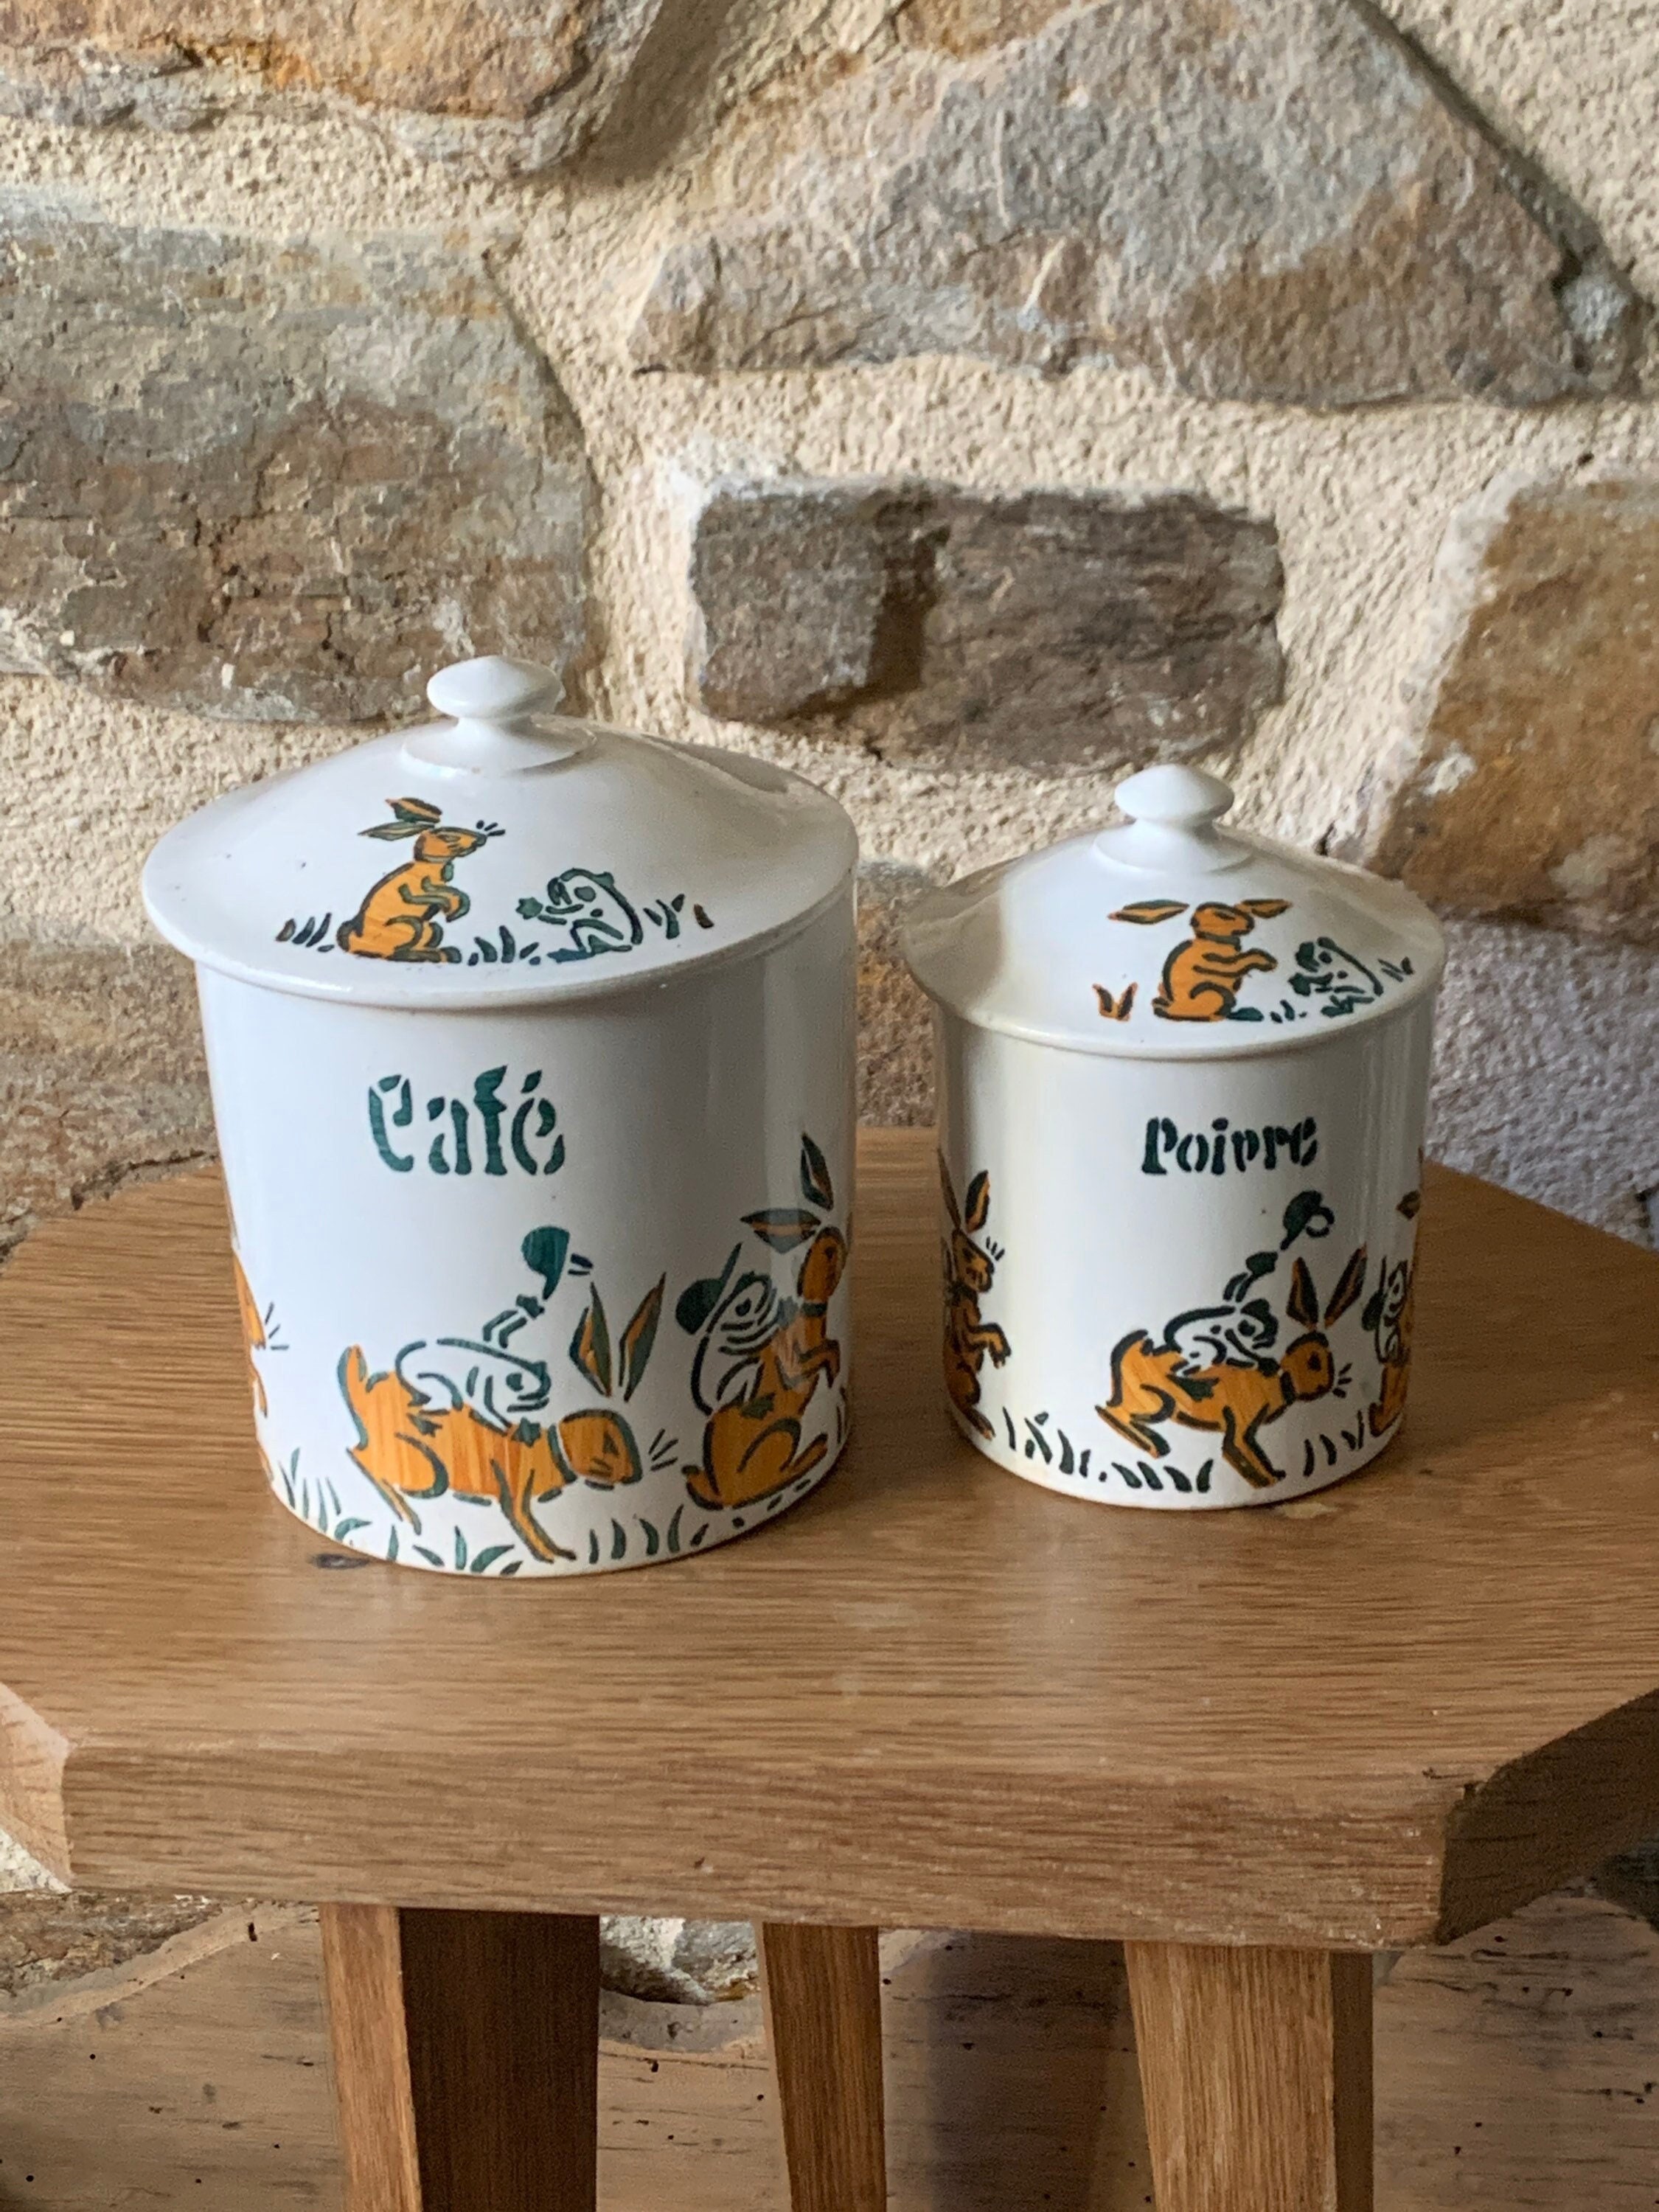 2 Pots à Épices Givors France Au Décor de Lapin et Grenouille , 2 Poivre Café Givors